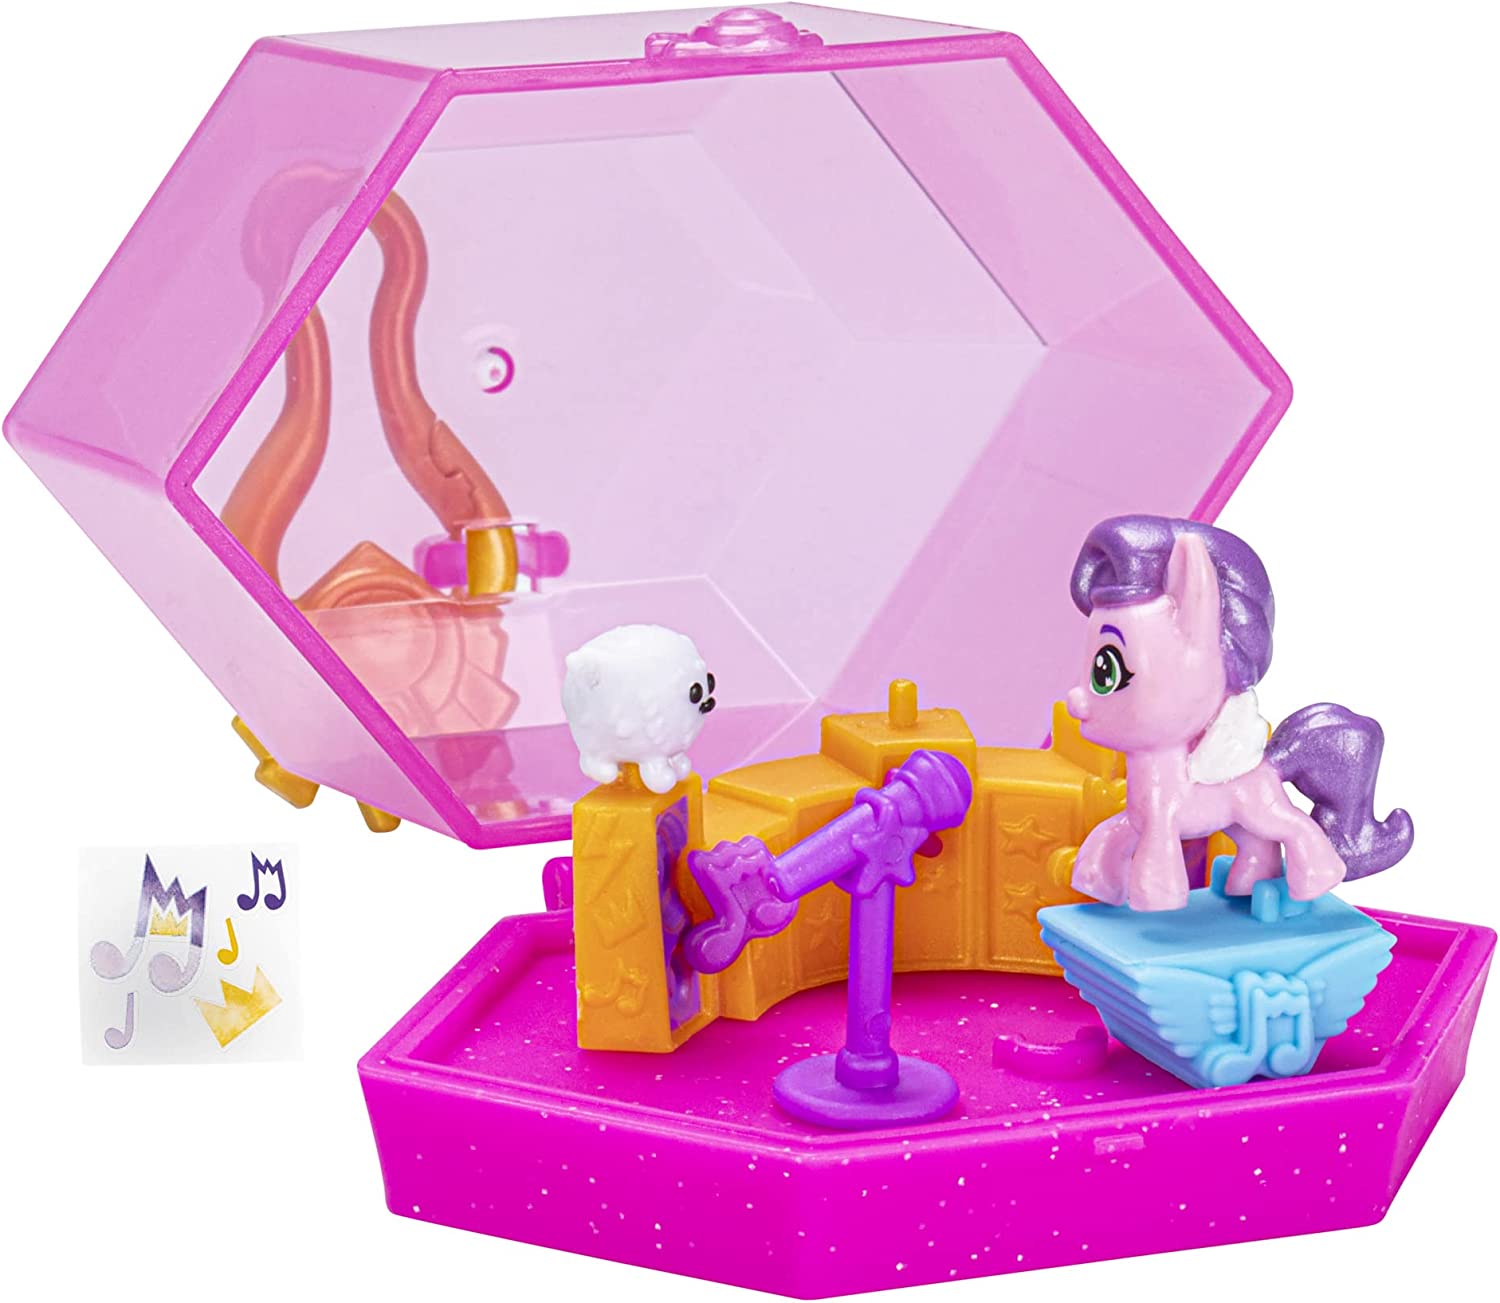 MLP: ANG Mini World Magic Princess Pipp Petals Crystal Keychain Play Set 3